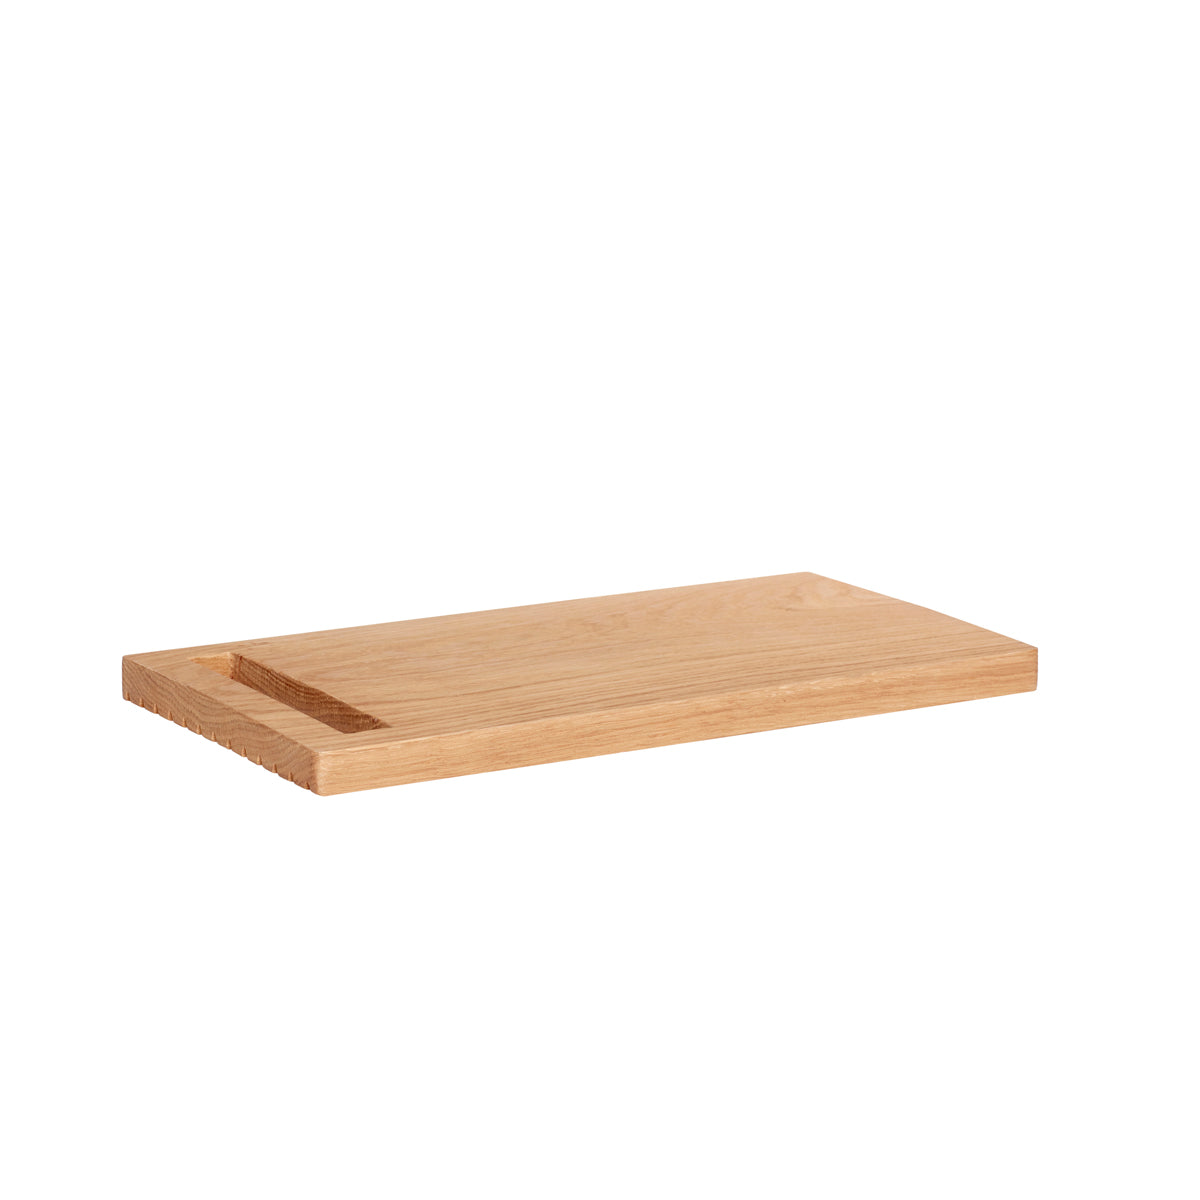 Hübsch Cutting board, oak, FSC, nature, s/2